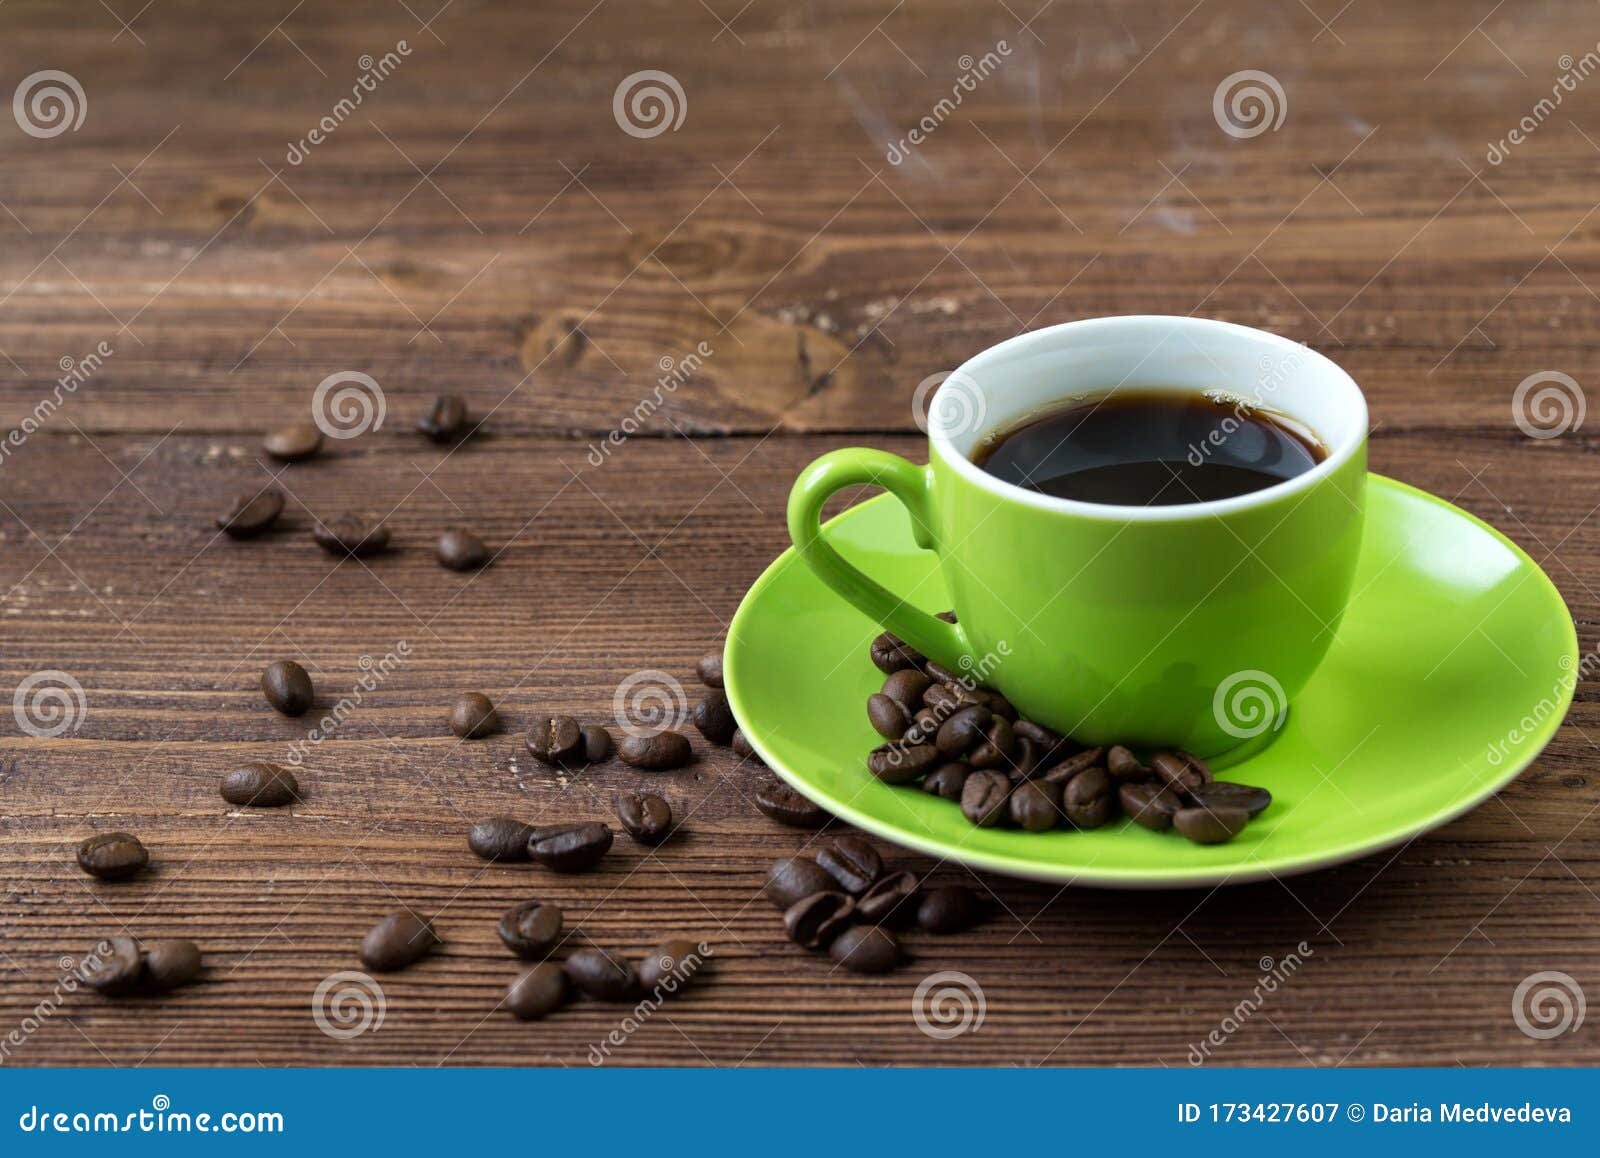 taza de cafe con granos verdes frescos